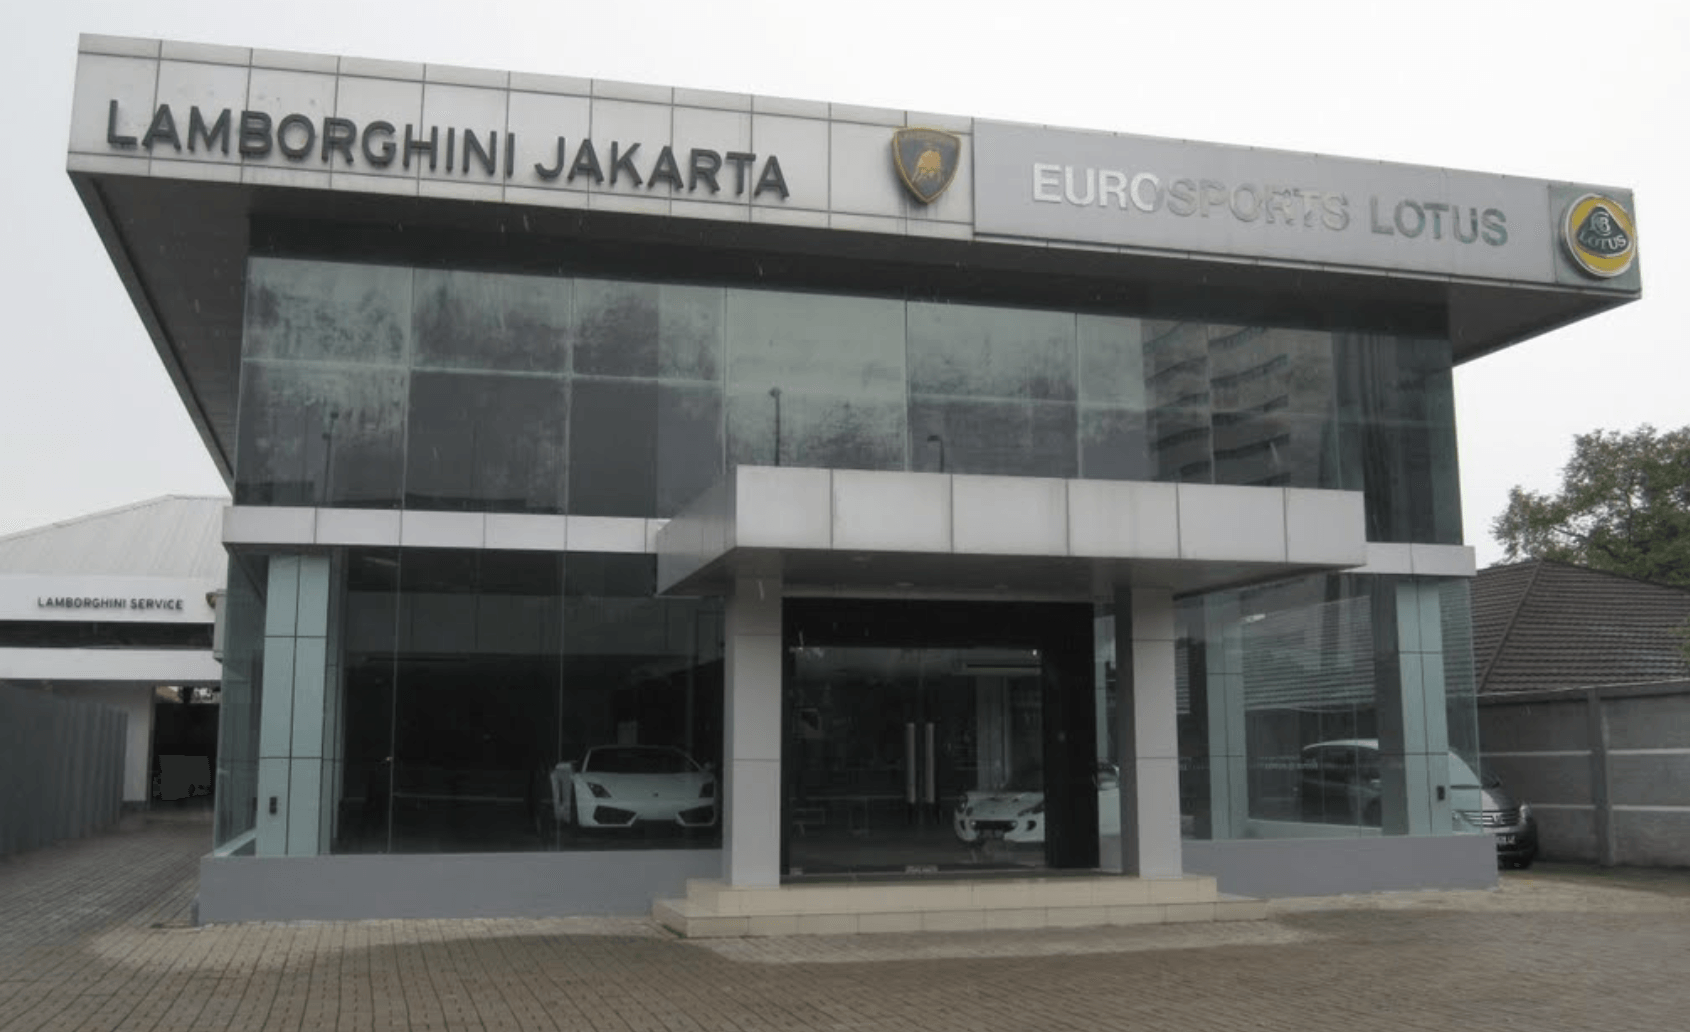 Tampak depan 'showroom' Lamborghini Jakarta. Foto dari Google Maps 